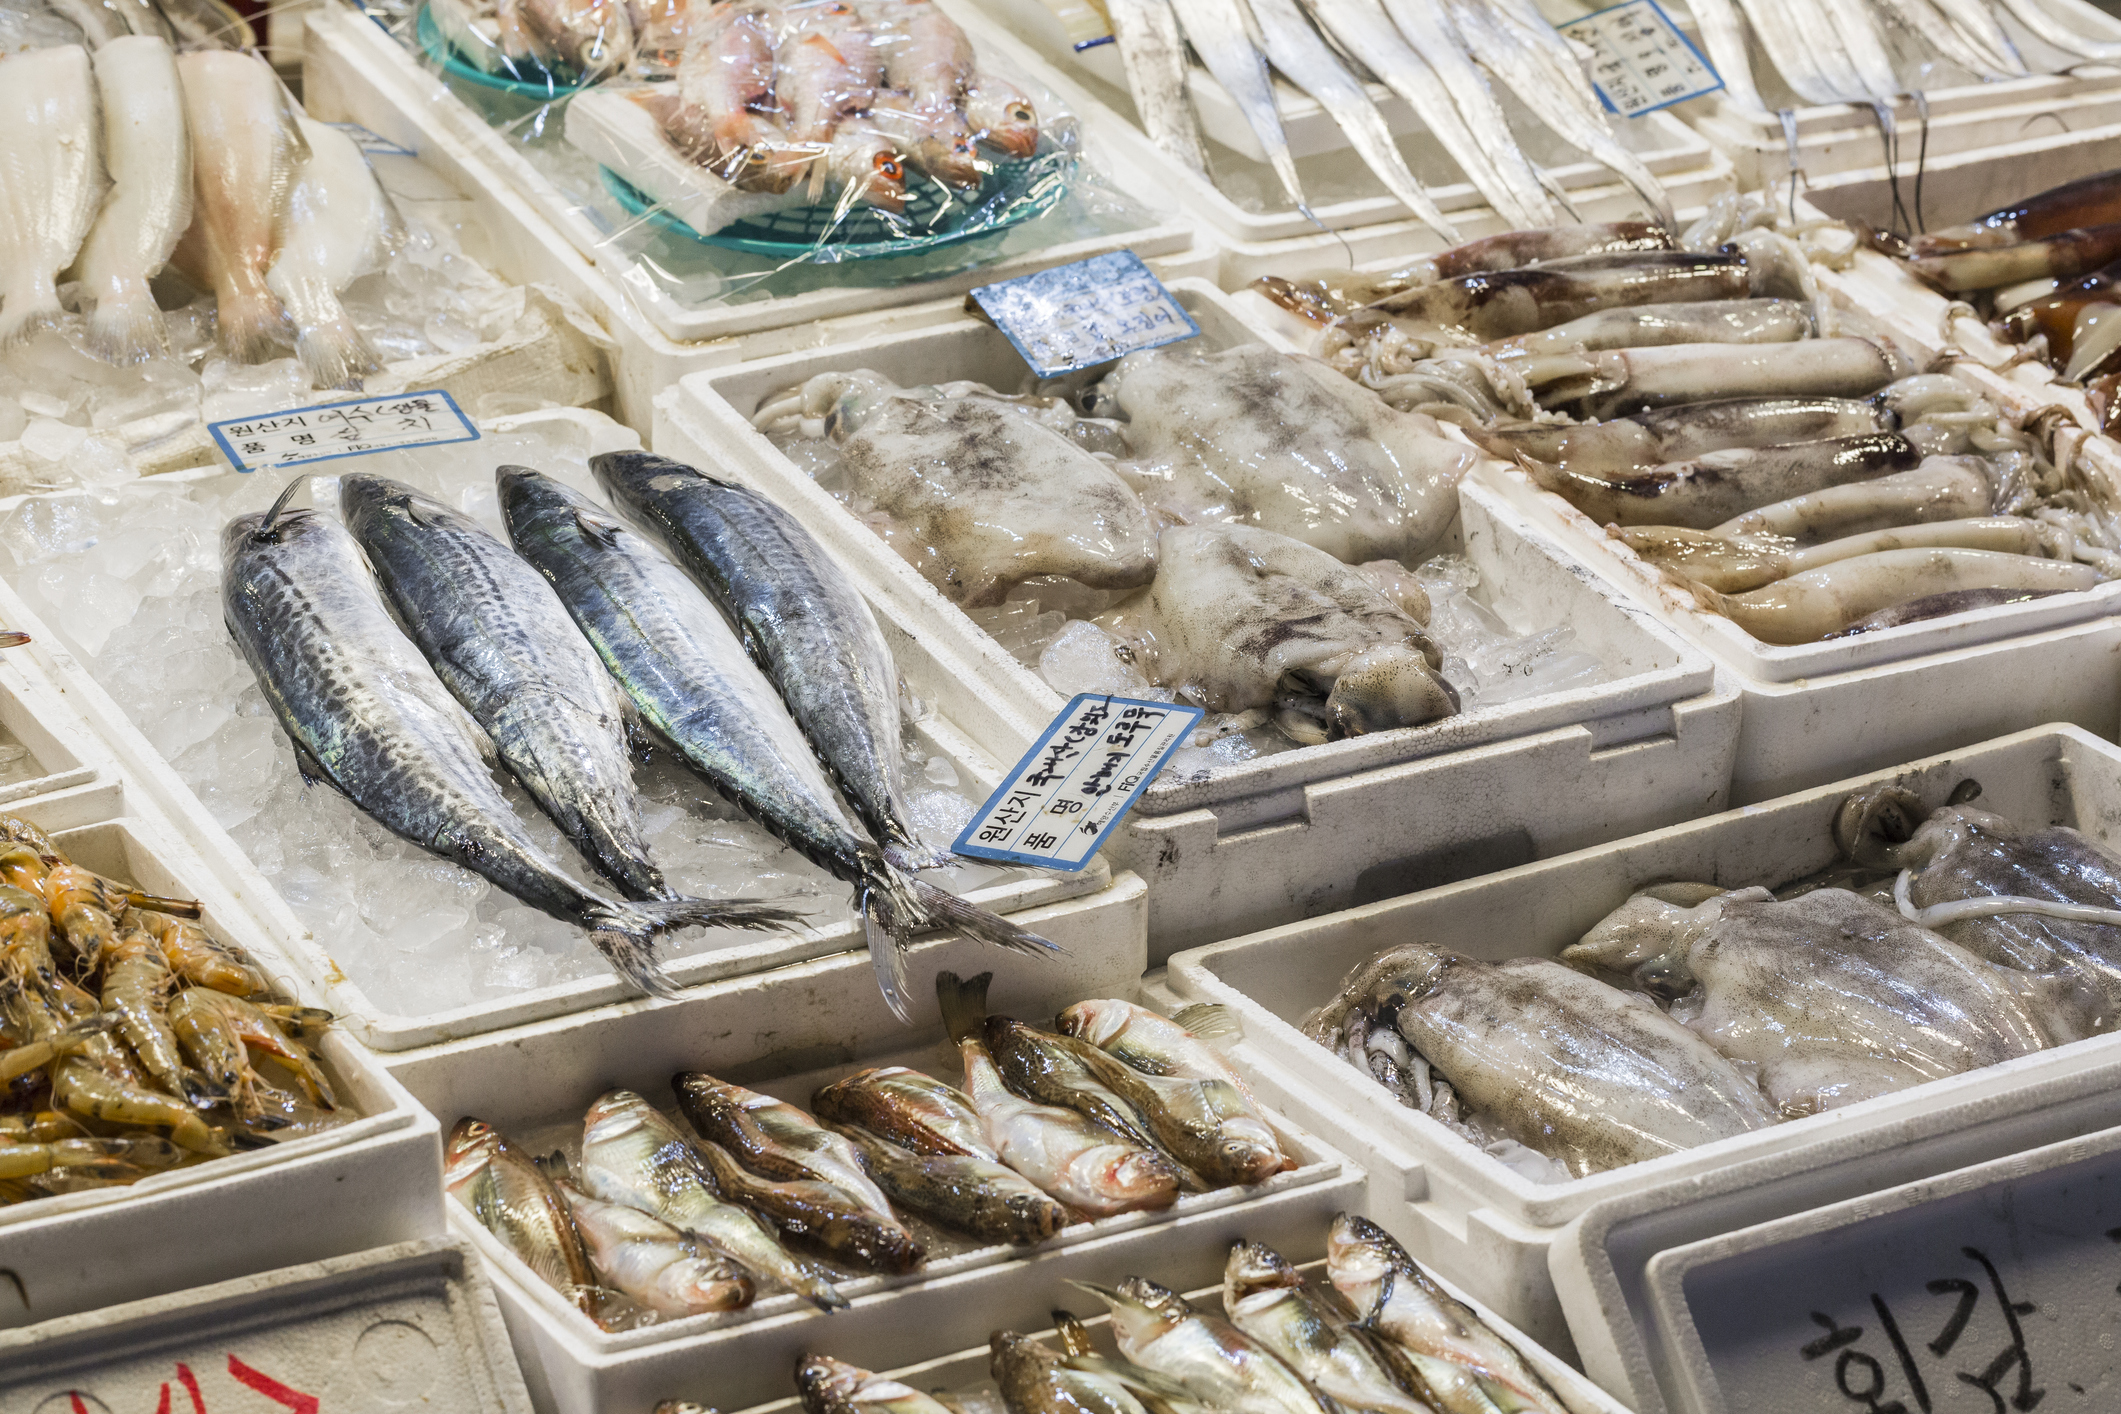 A supermarket sold poisonous fish.